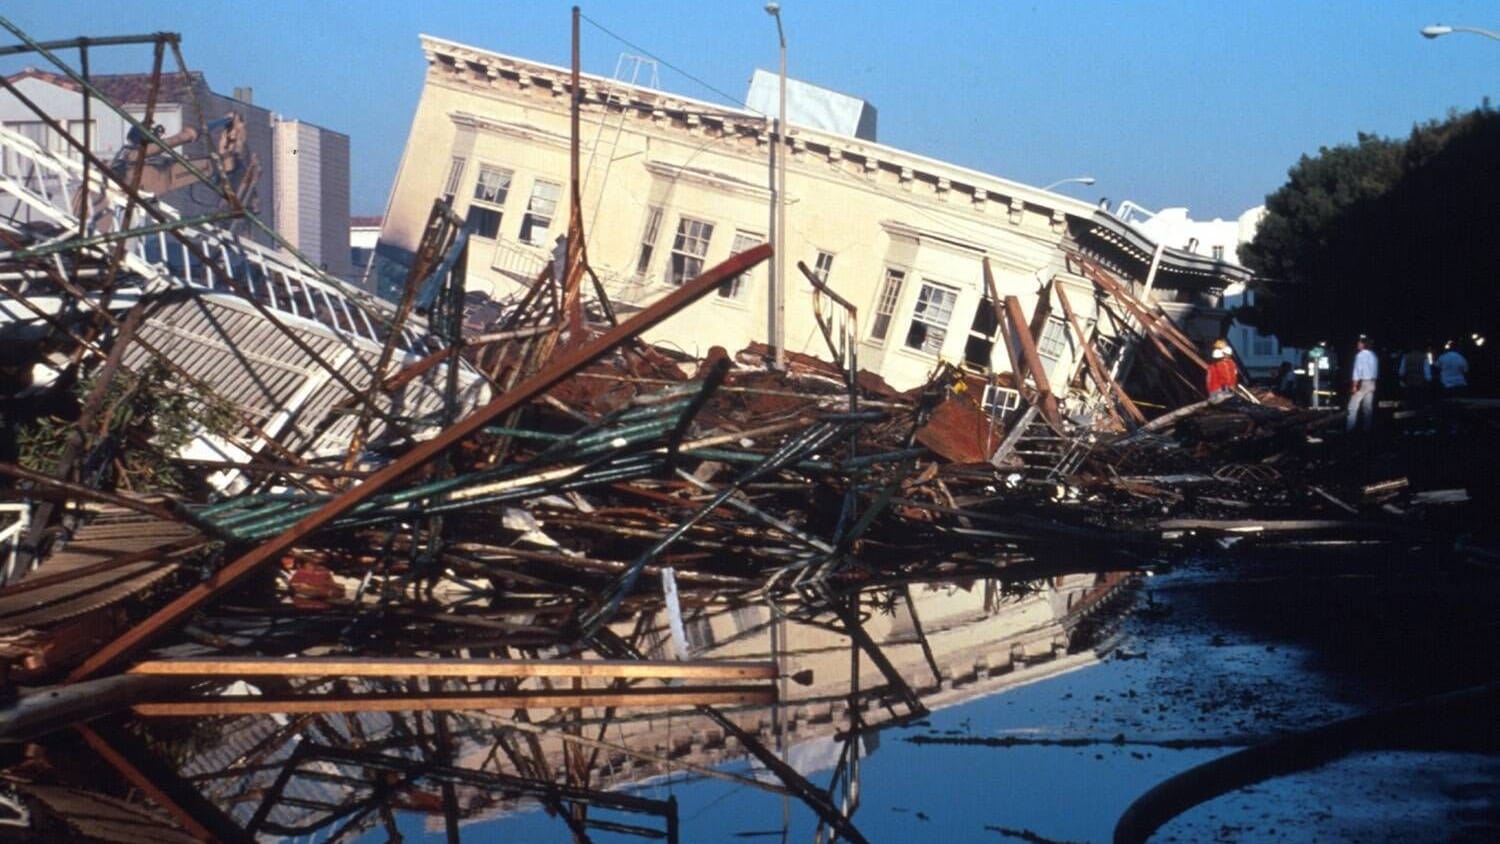 Kalifornien: Studie warnt vor möglichem schwerem Erdbeben